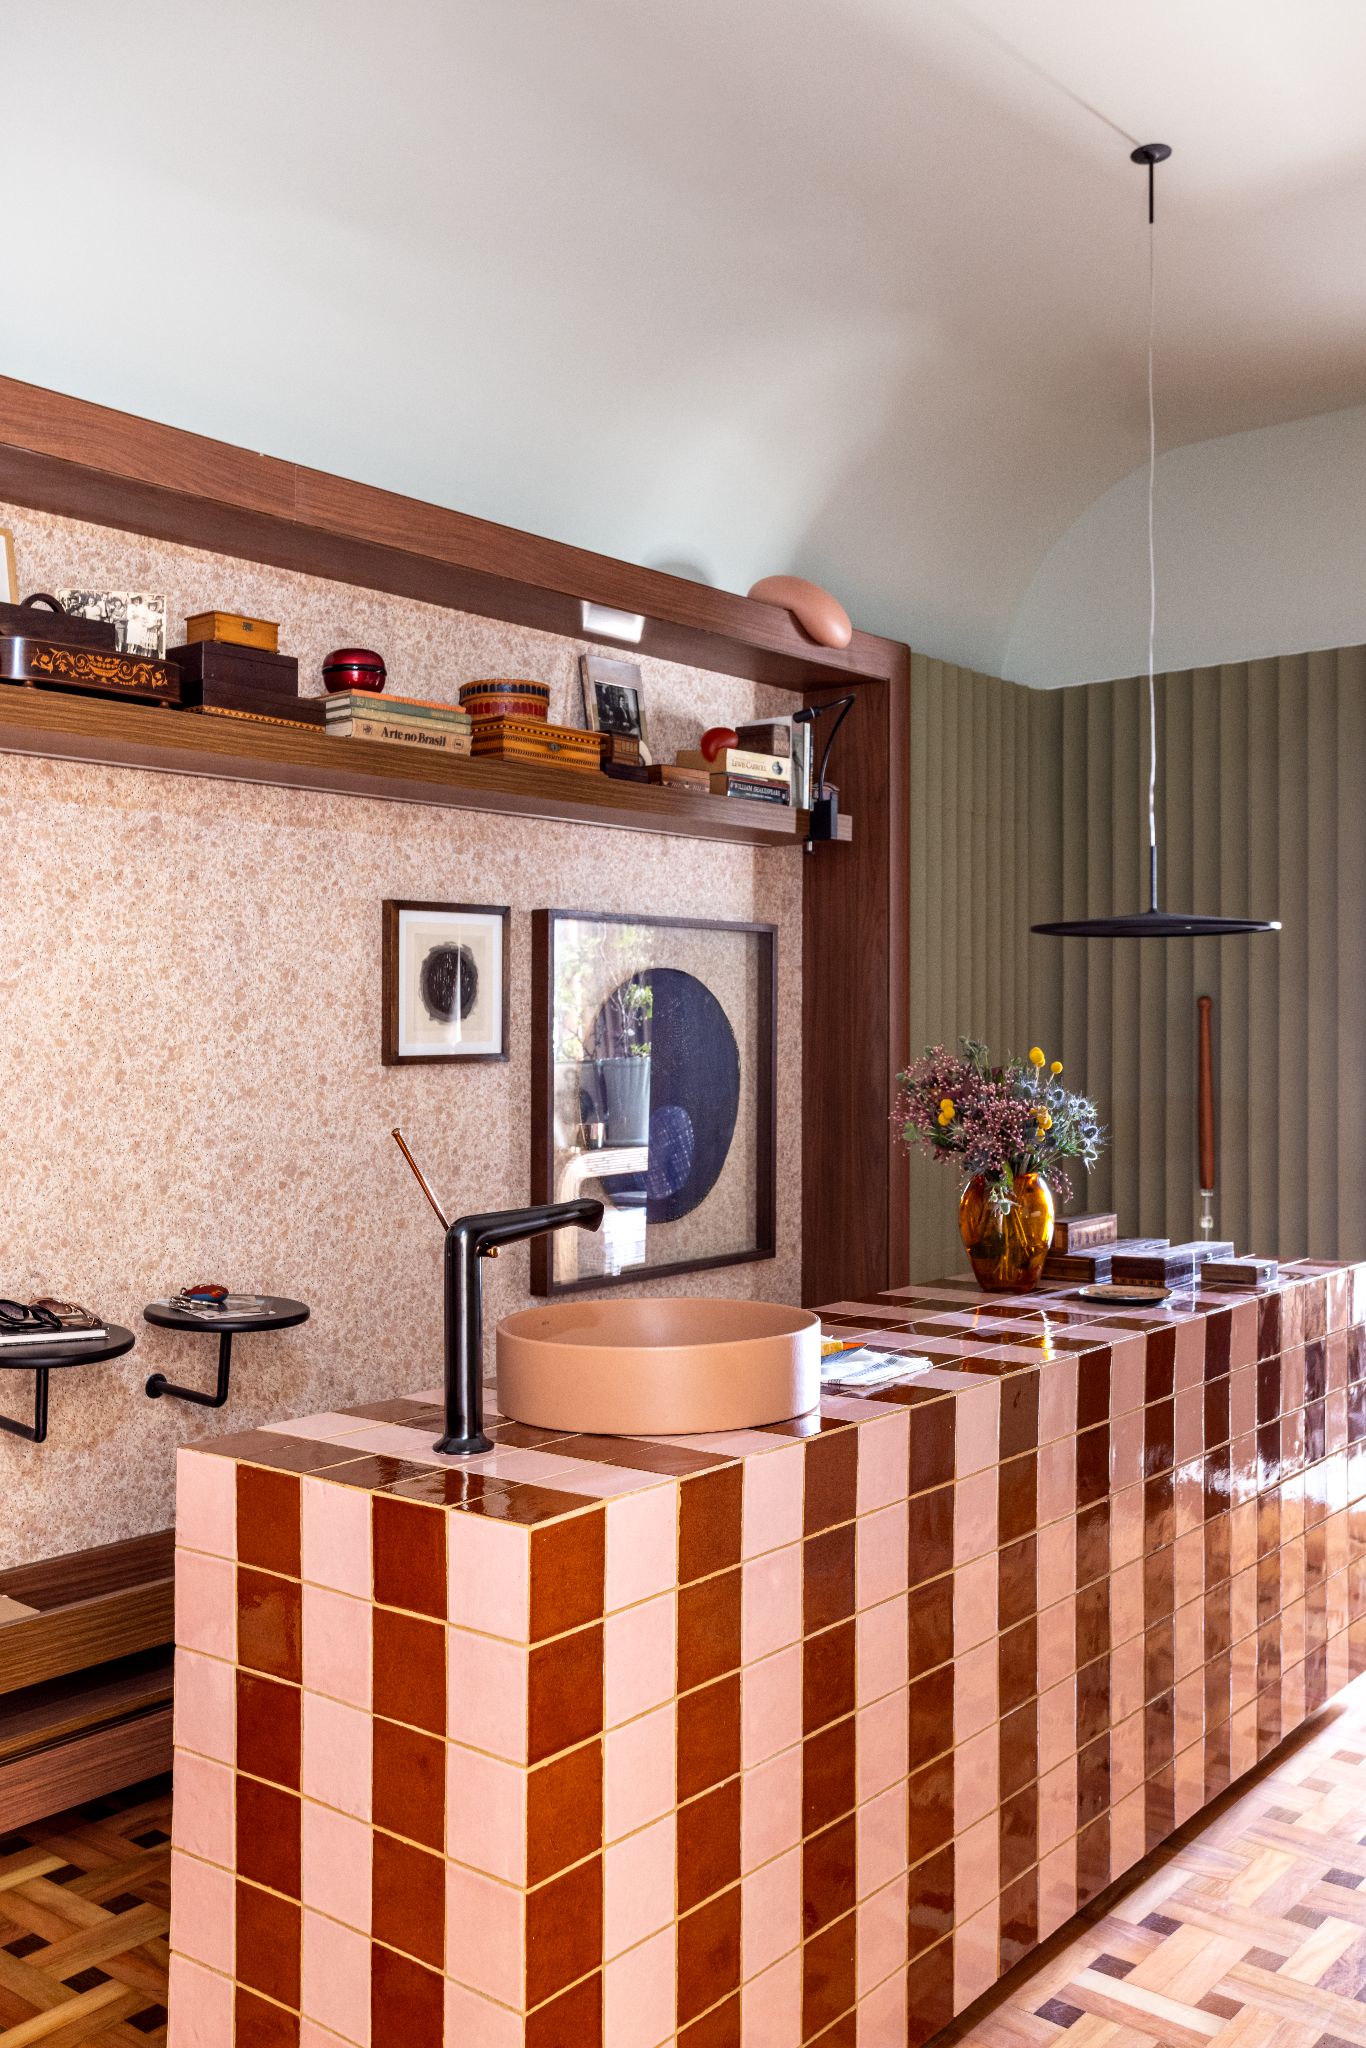 Revestimentos Casacor: Ambiente com piso de tacos de madeira, parede com revestimento de granilite rose, prateleiras de madeiras com objetos e bancada com revestimento marrom e rose.